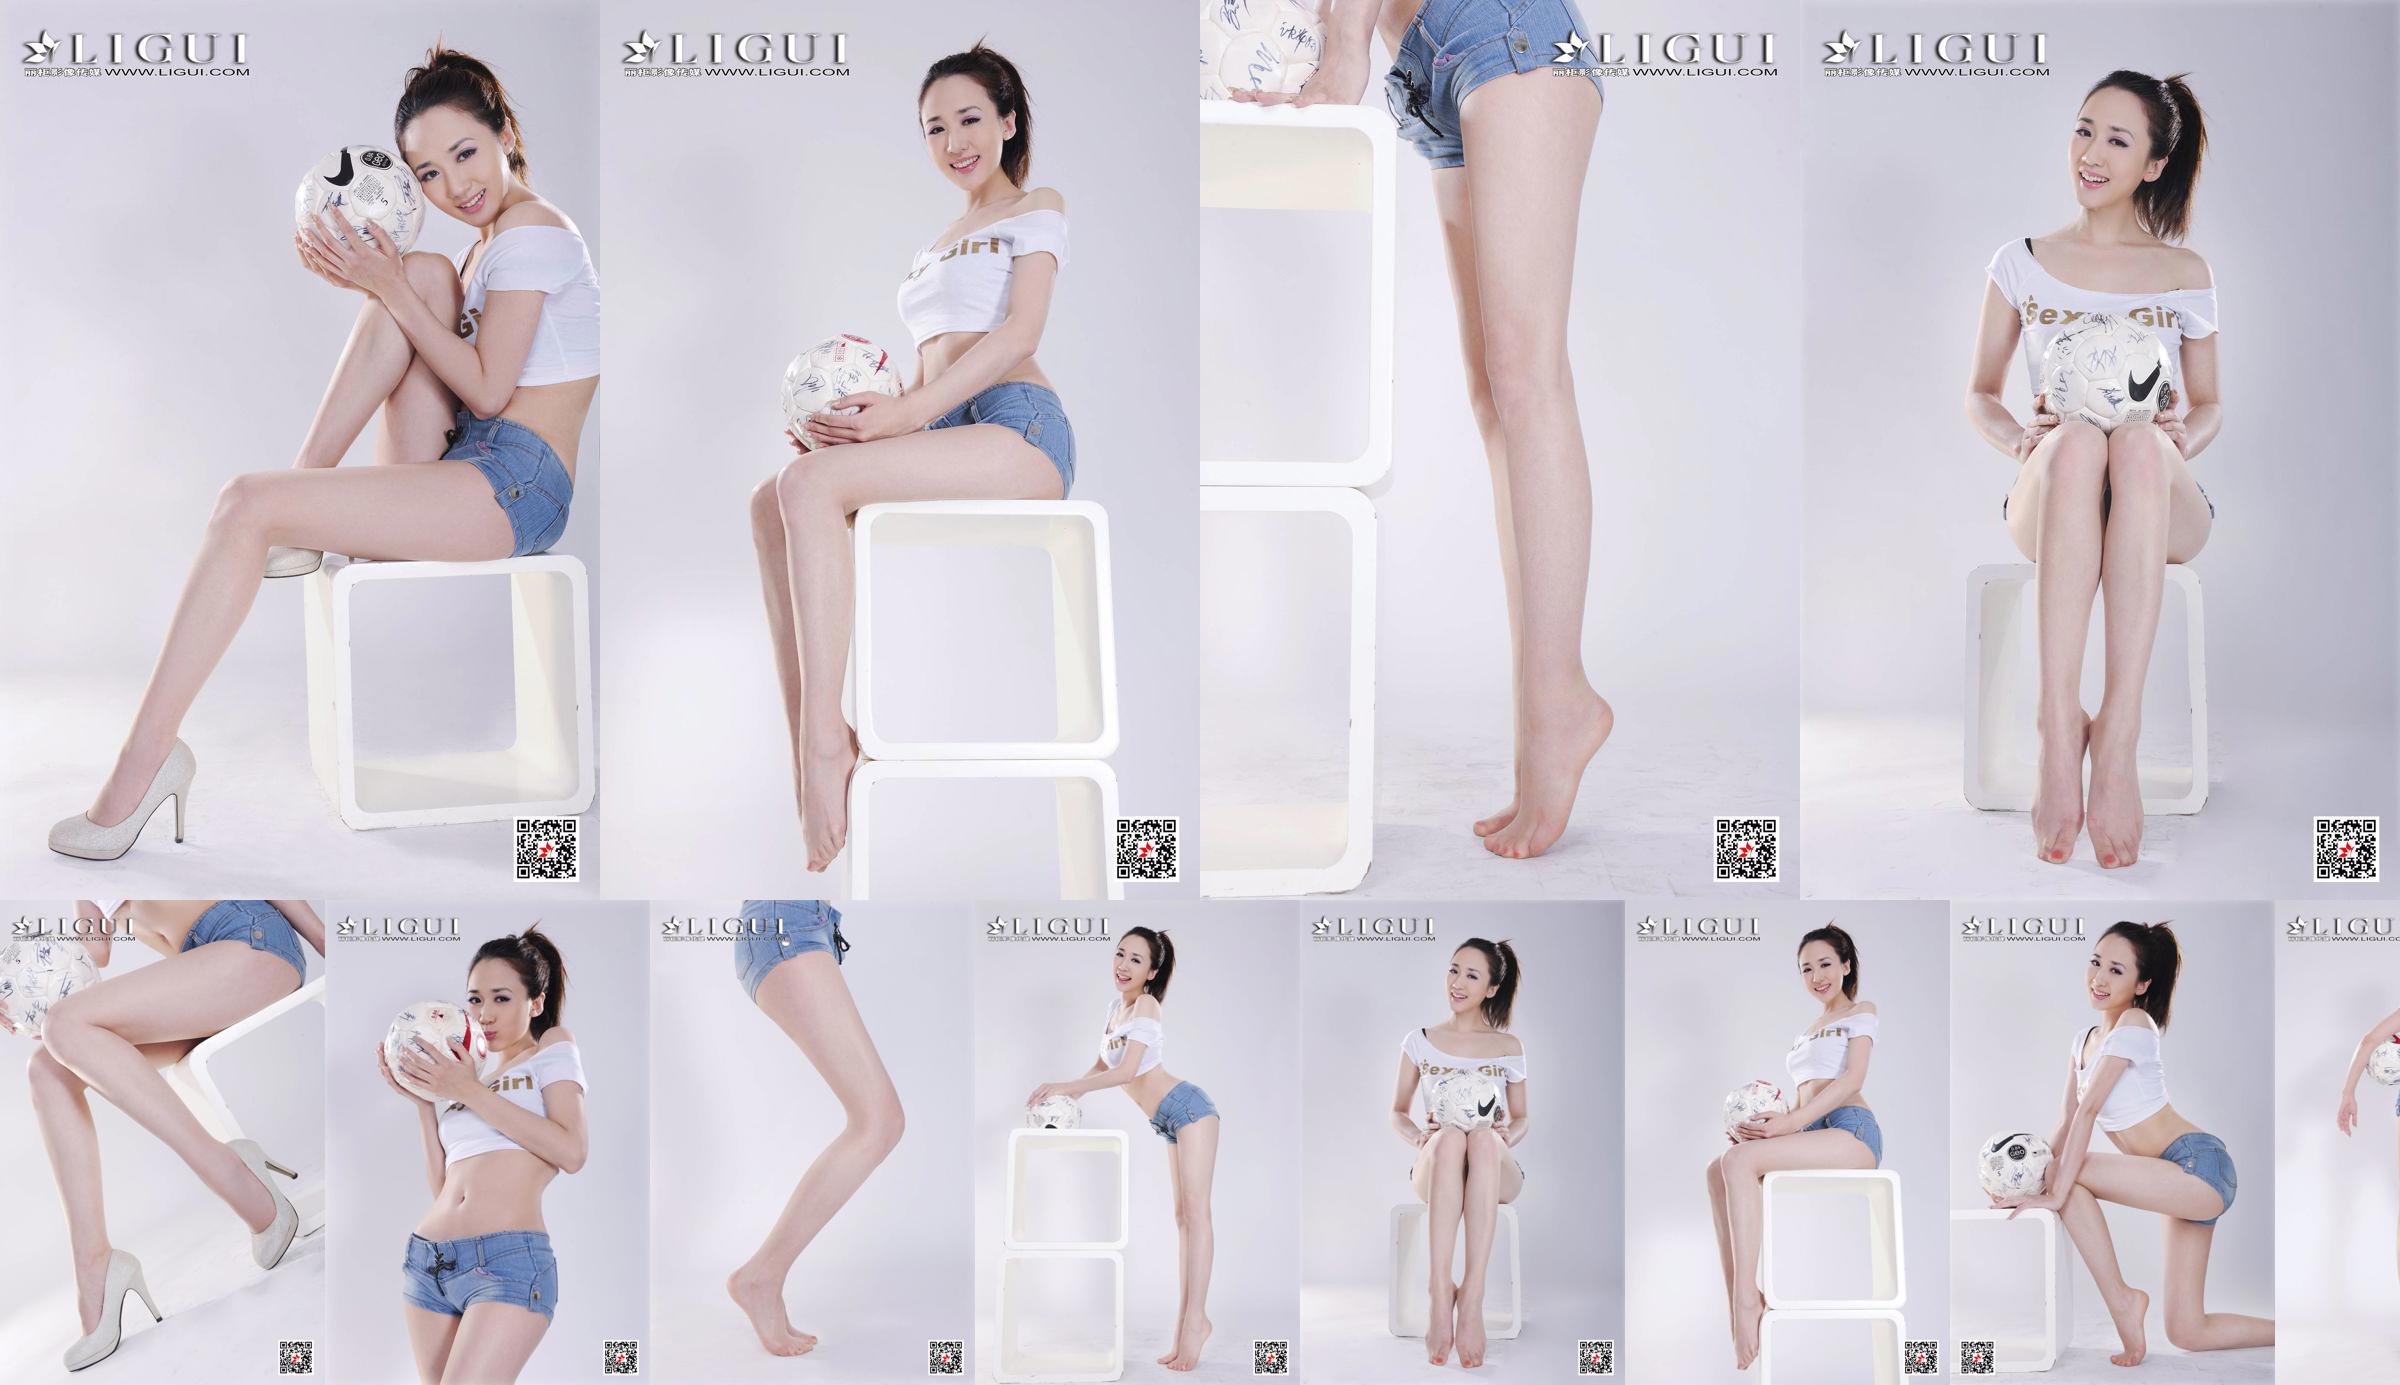 Model Qiu Chen "Super Short Hot Pants Football Girl" [LIGUI] No.d6ab65 Page 1